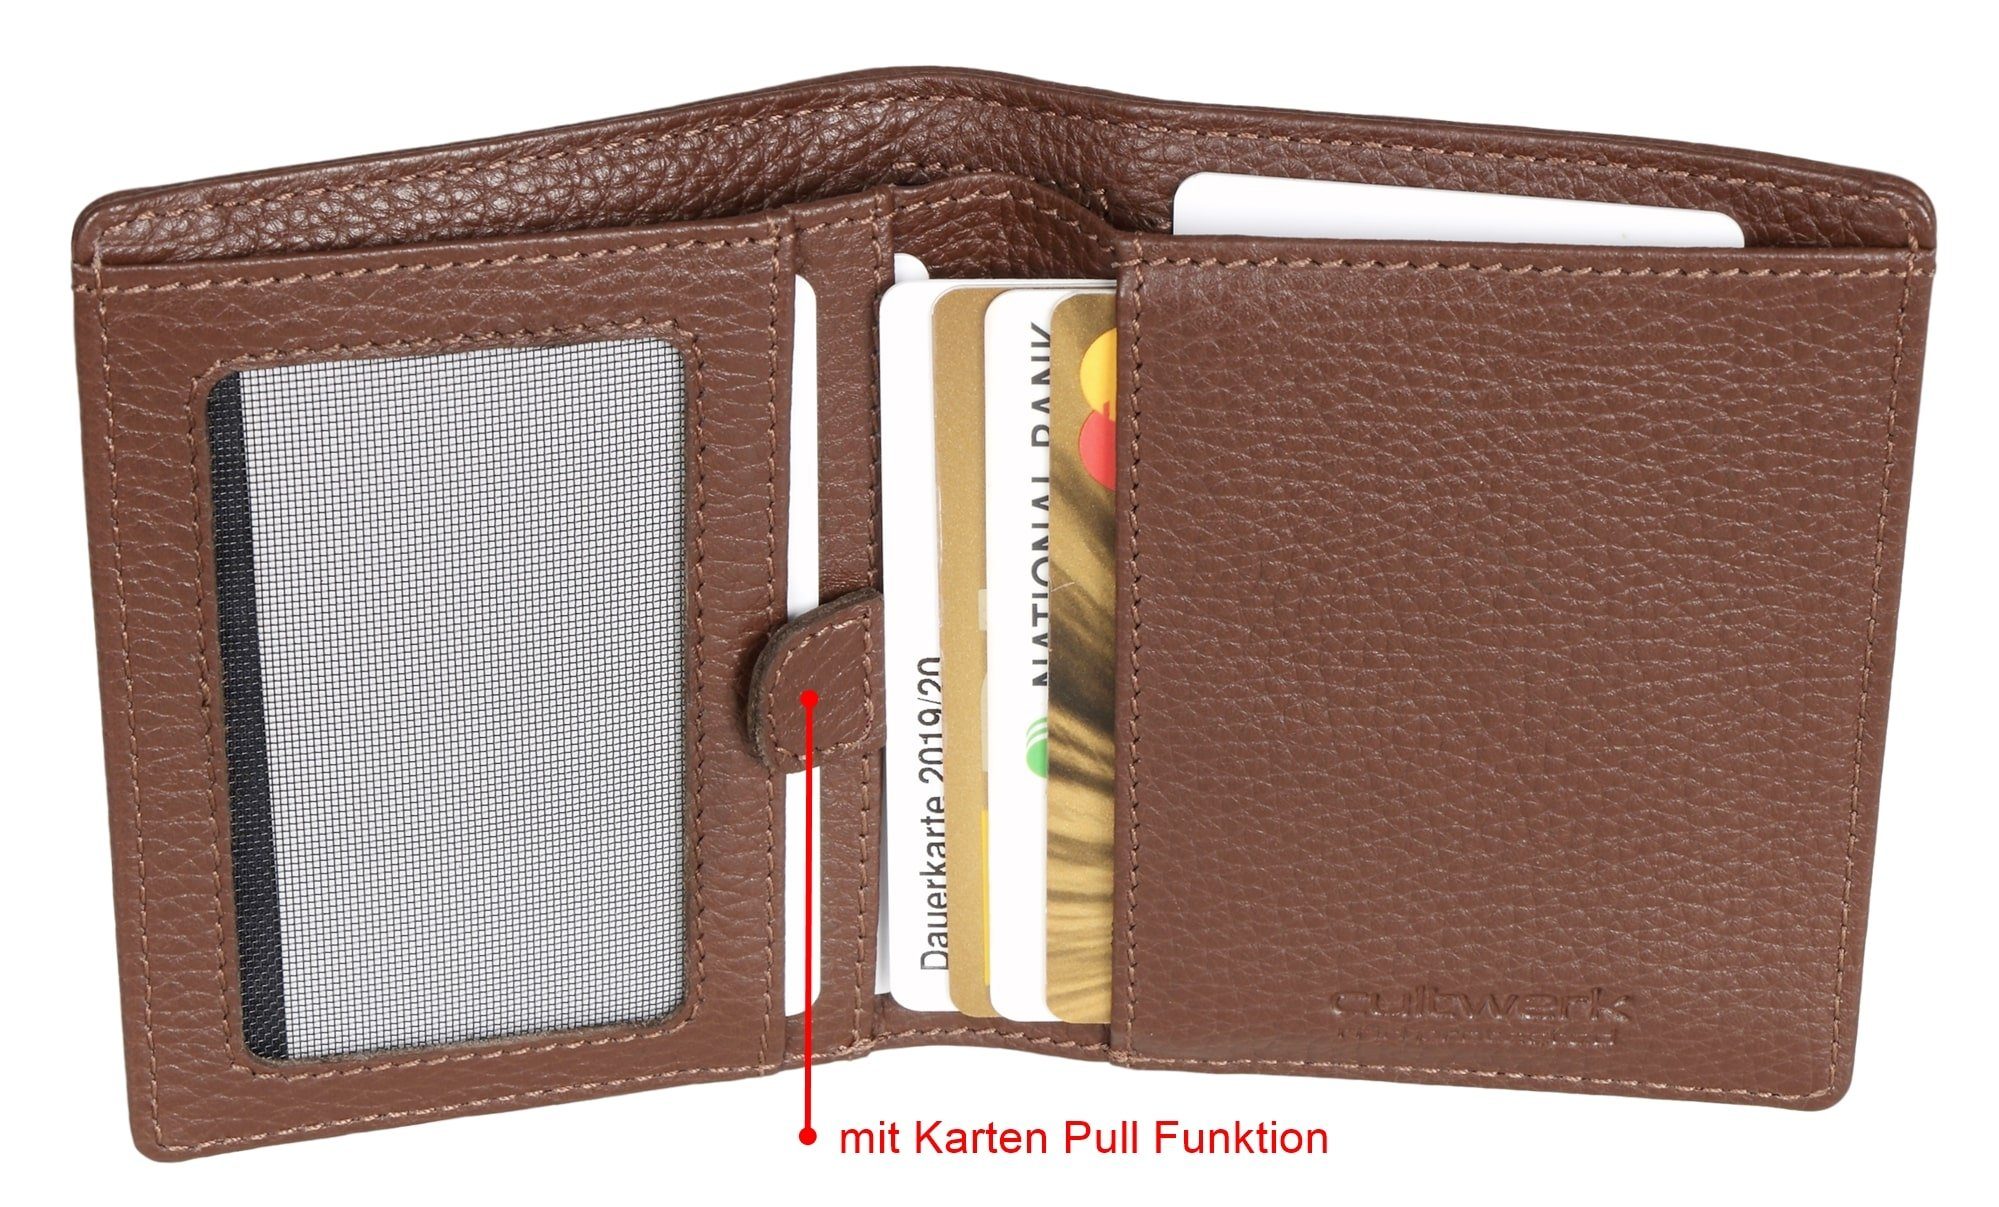 Bear mit IV Geldbörse Farbe Echtleder RFID-Schutz Herren für Kartenfächern, Braun 5 Modell Cultwerk Braun-Espresso Pull mit Card Funktion aus Brown und